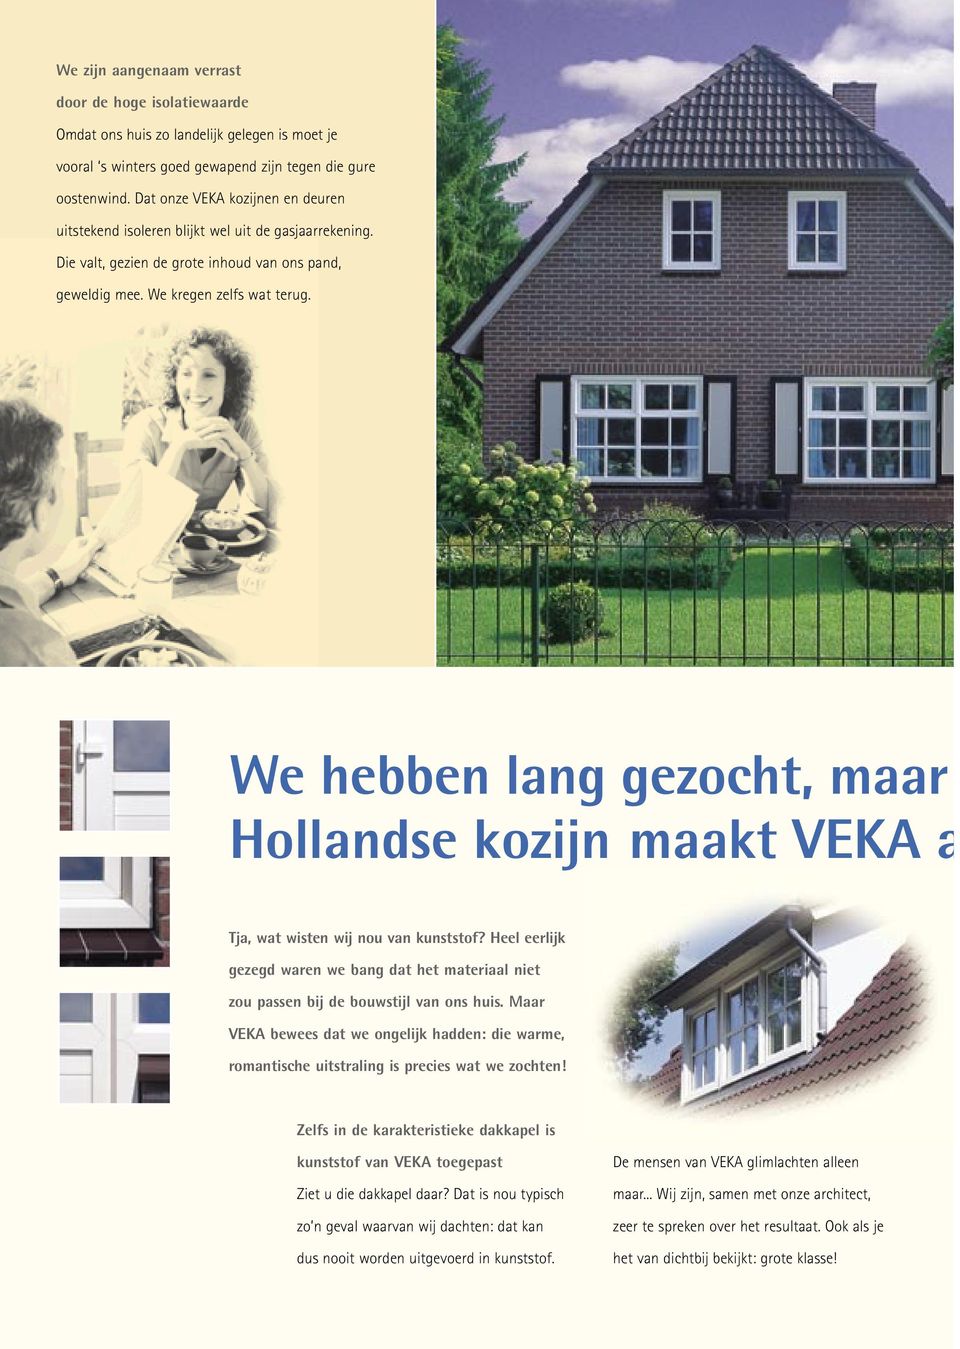 We hebben lang gezocht, maar Hollandse kozijn maakt VEKA a Tja, wat wisten wij nou van kunststof? Heel eerlijk gezegd waren we bang dat het materiaal niet zou passen bij de bouwstijl van ons huis.